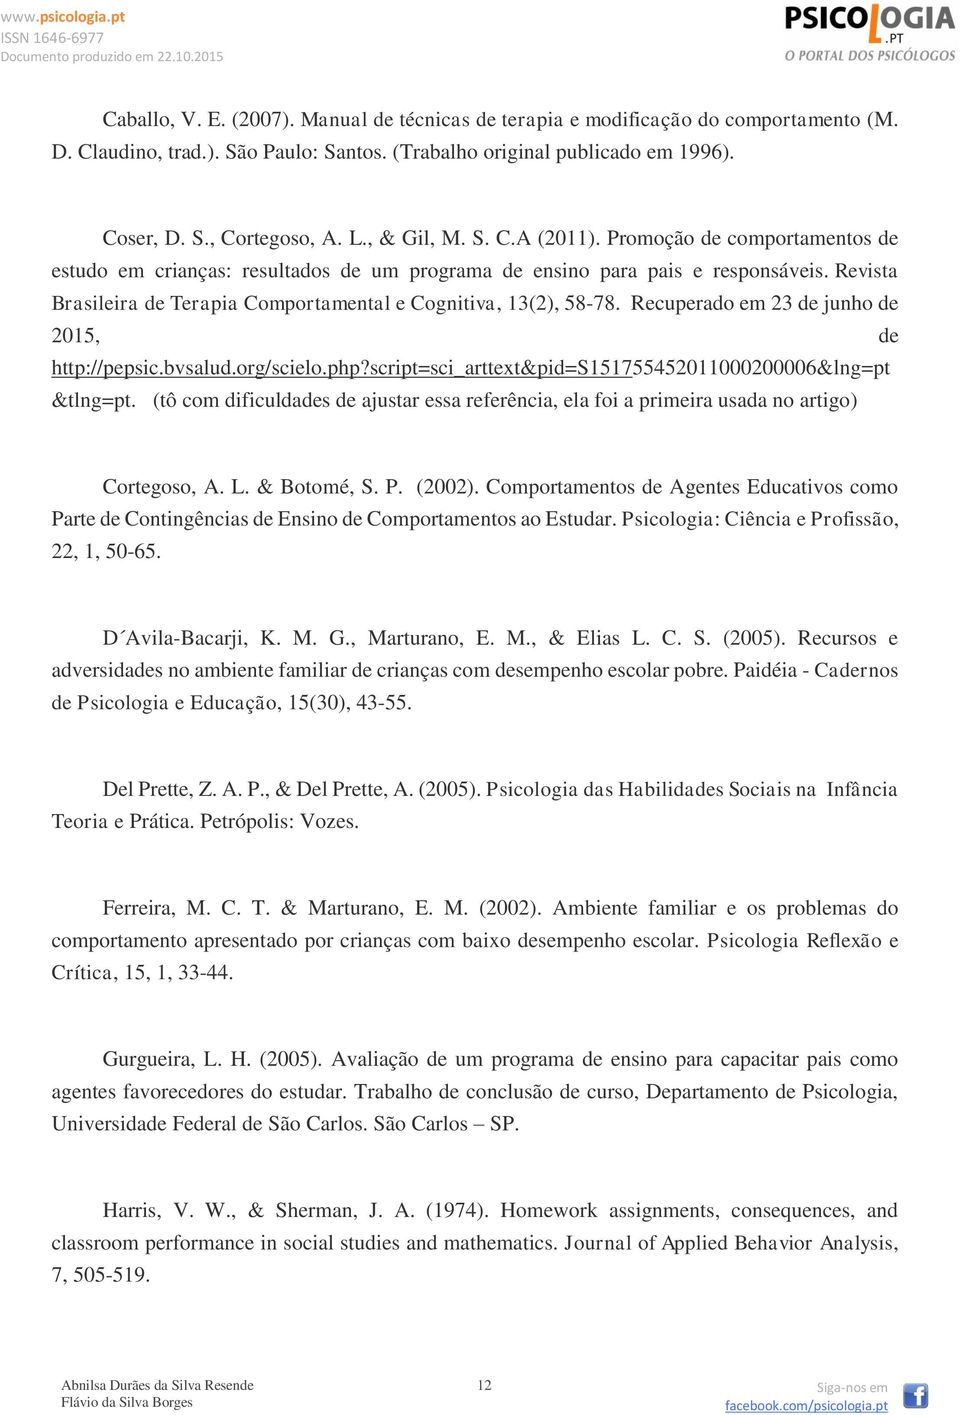 Revista Brasileira de Terapia Comportamental e Cognitiva, 13(2), 58-78. Recuperado em 23 de junho de 2015, de http://pepsic.bvsalud.org/scielo.php?